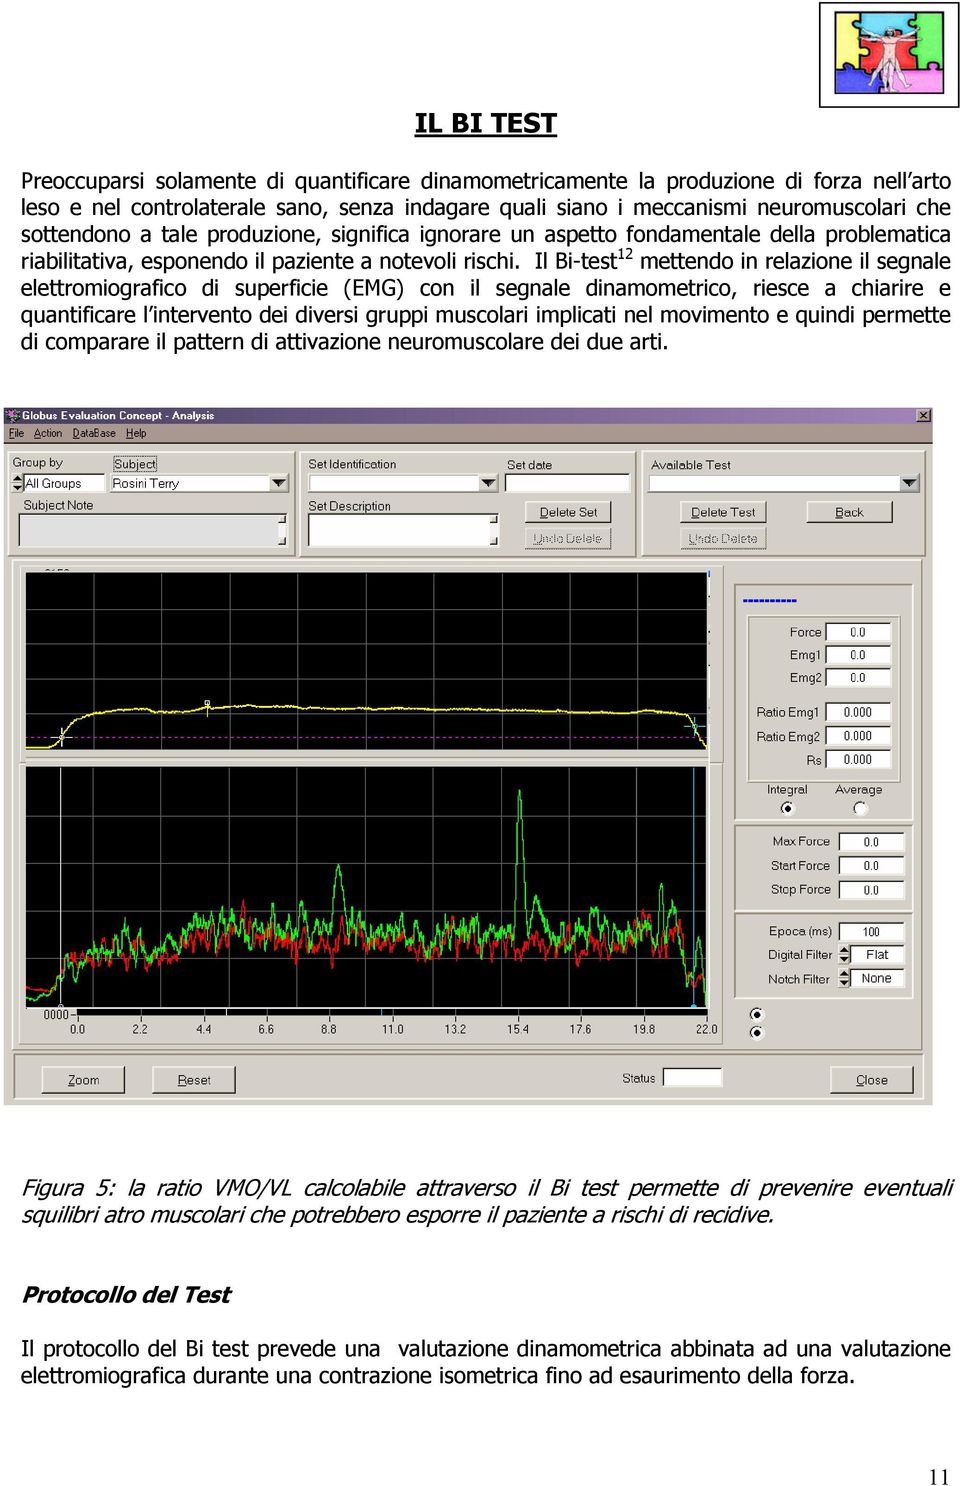 Il Bi-test 12 mettendo in relazione il segnale elettromiografico di superficie (EMG) con il segnale dinamometrico, riesce a chiarire e quantificare l intervento dei diversi gruppi muscolari implicati